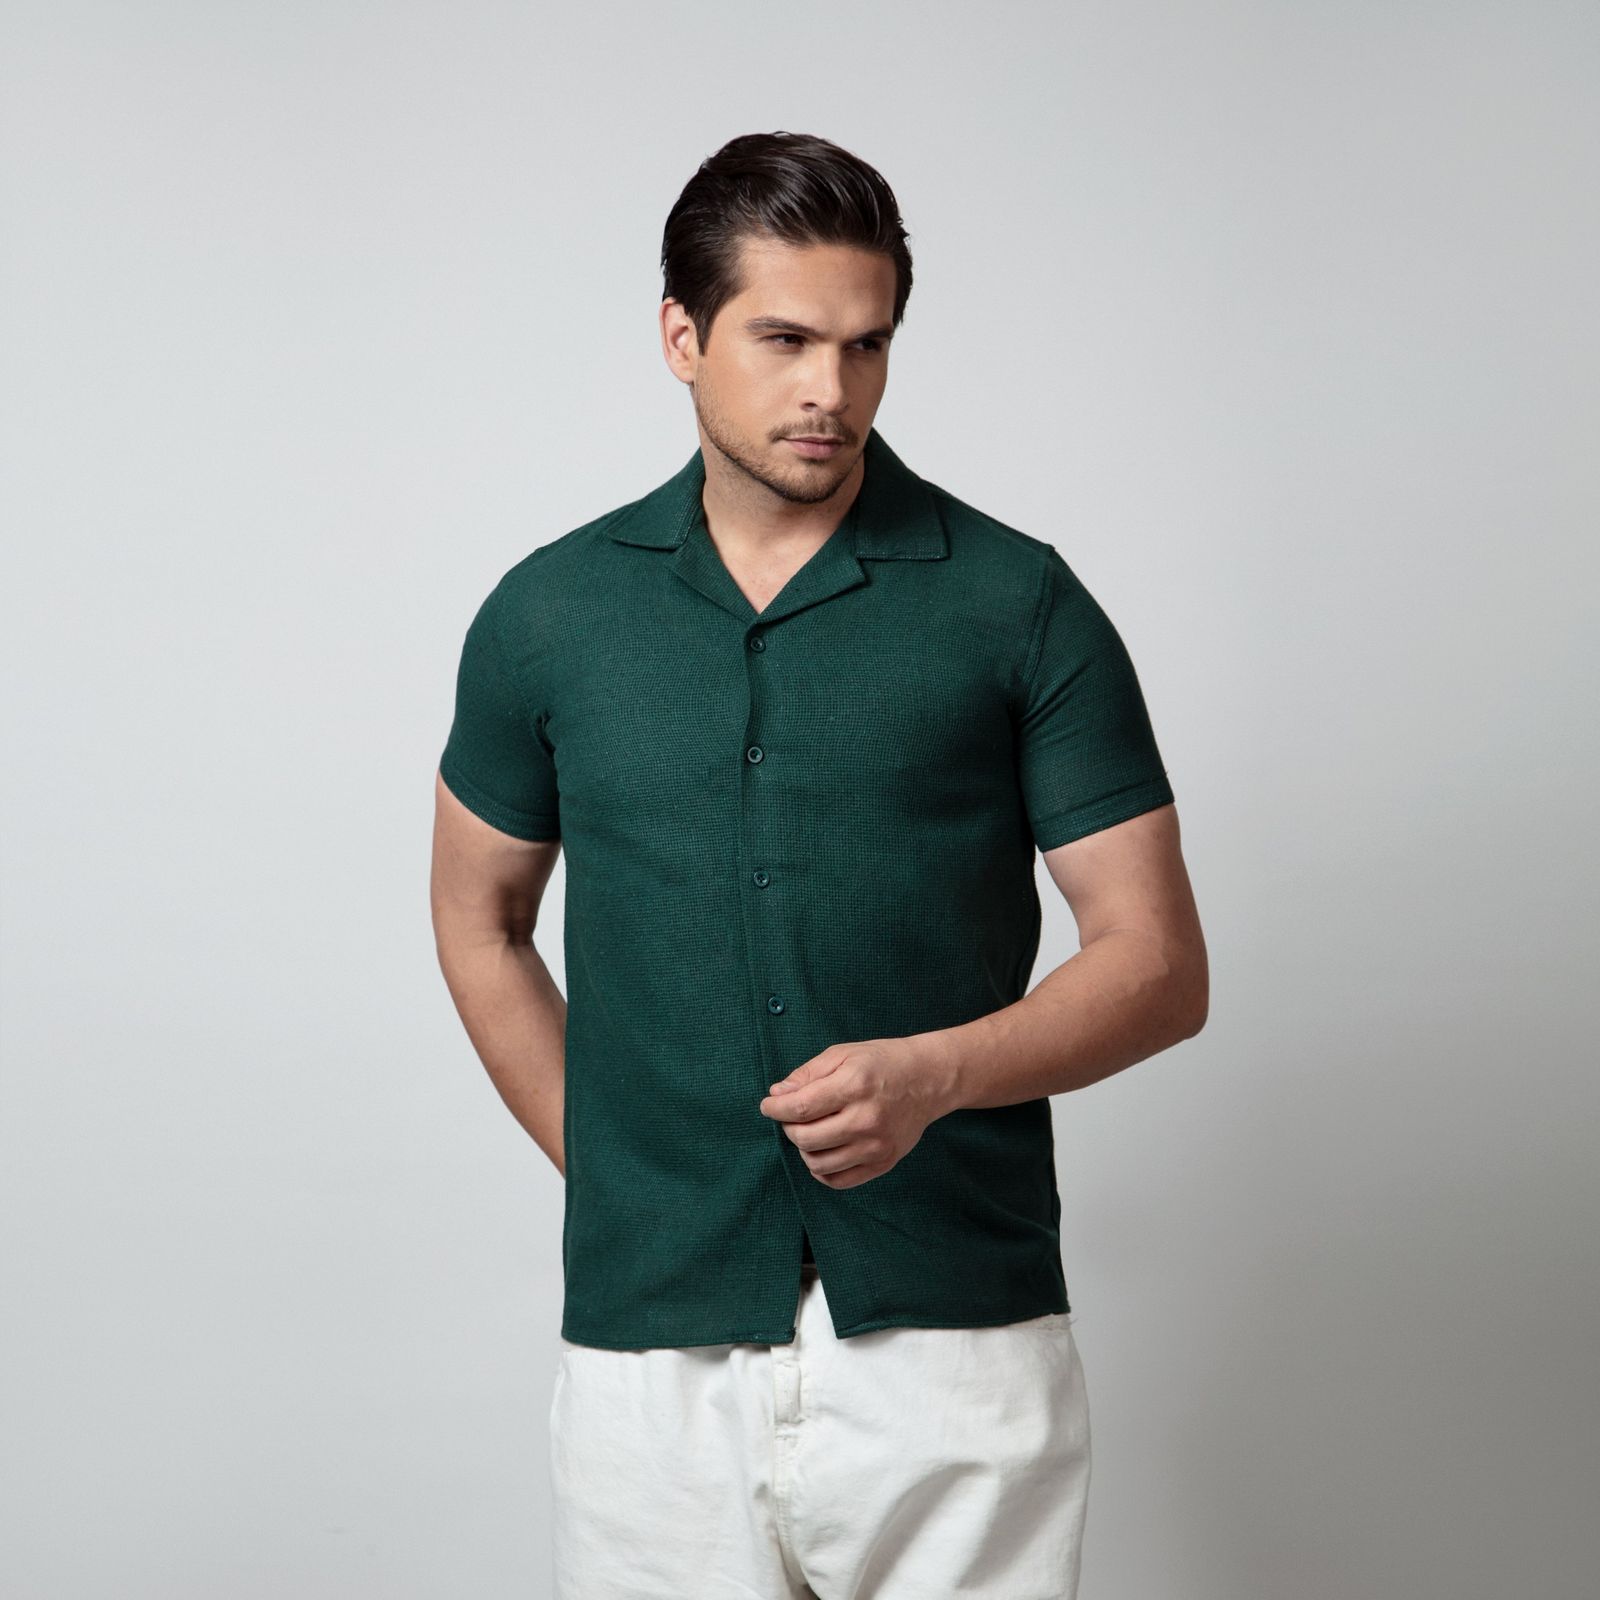 پیراهن آستین کوتاه مردانه باینت مدل 772-3 رنگ سبز -  - 1